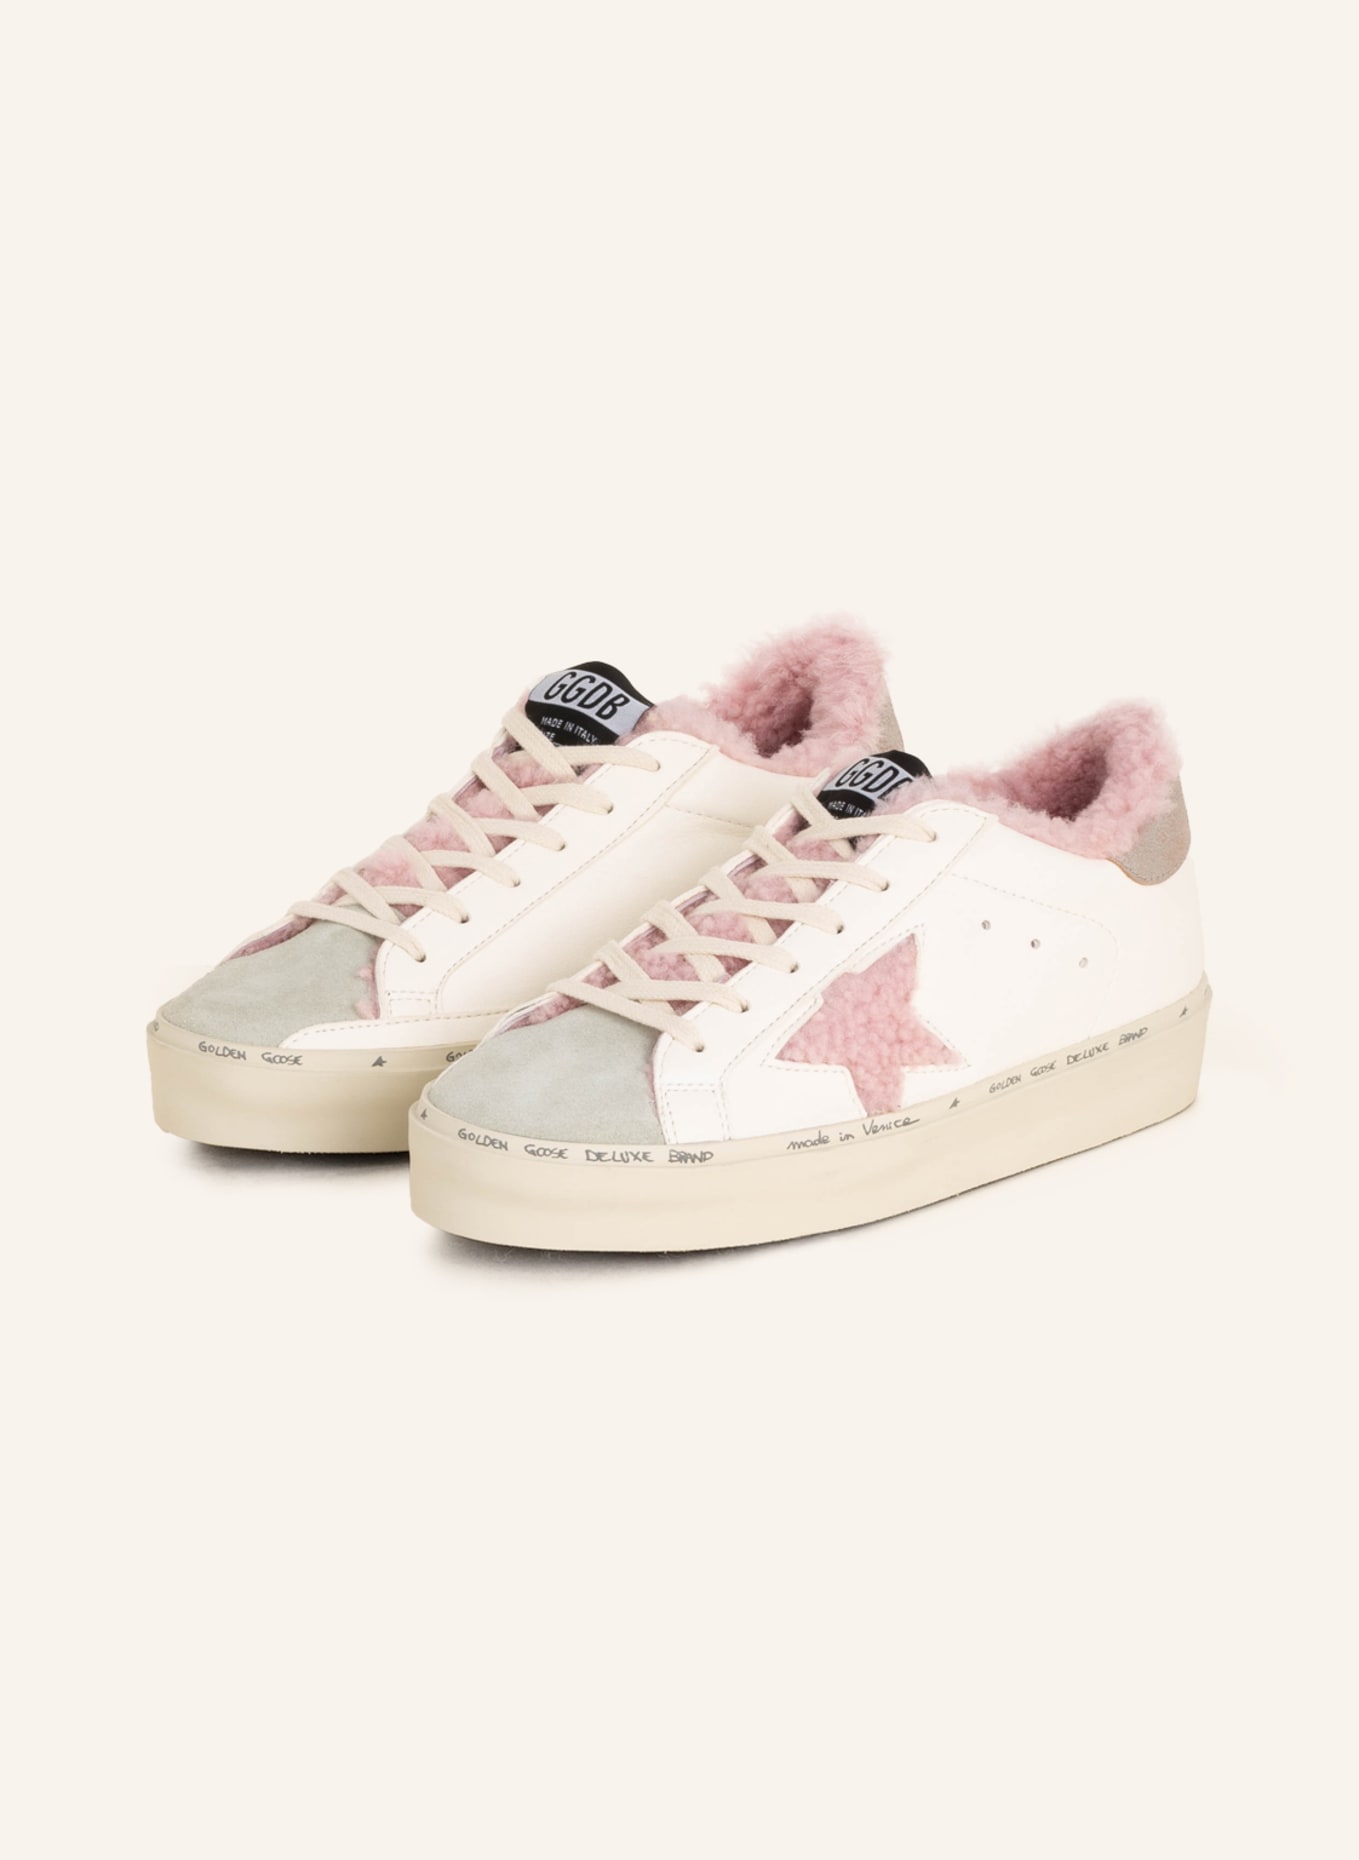 Donna Sneaker Hi Star Ltd Con Talloncino In Glitter Blu E, 57% OFF